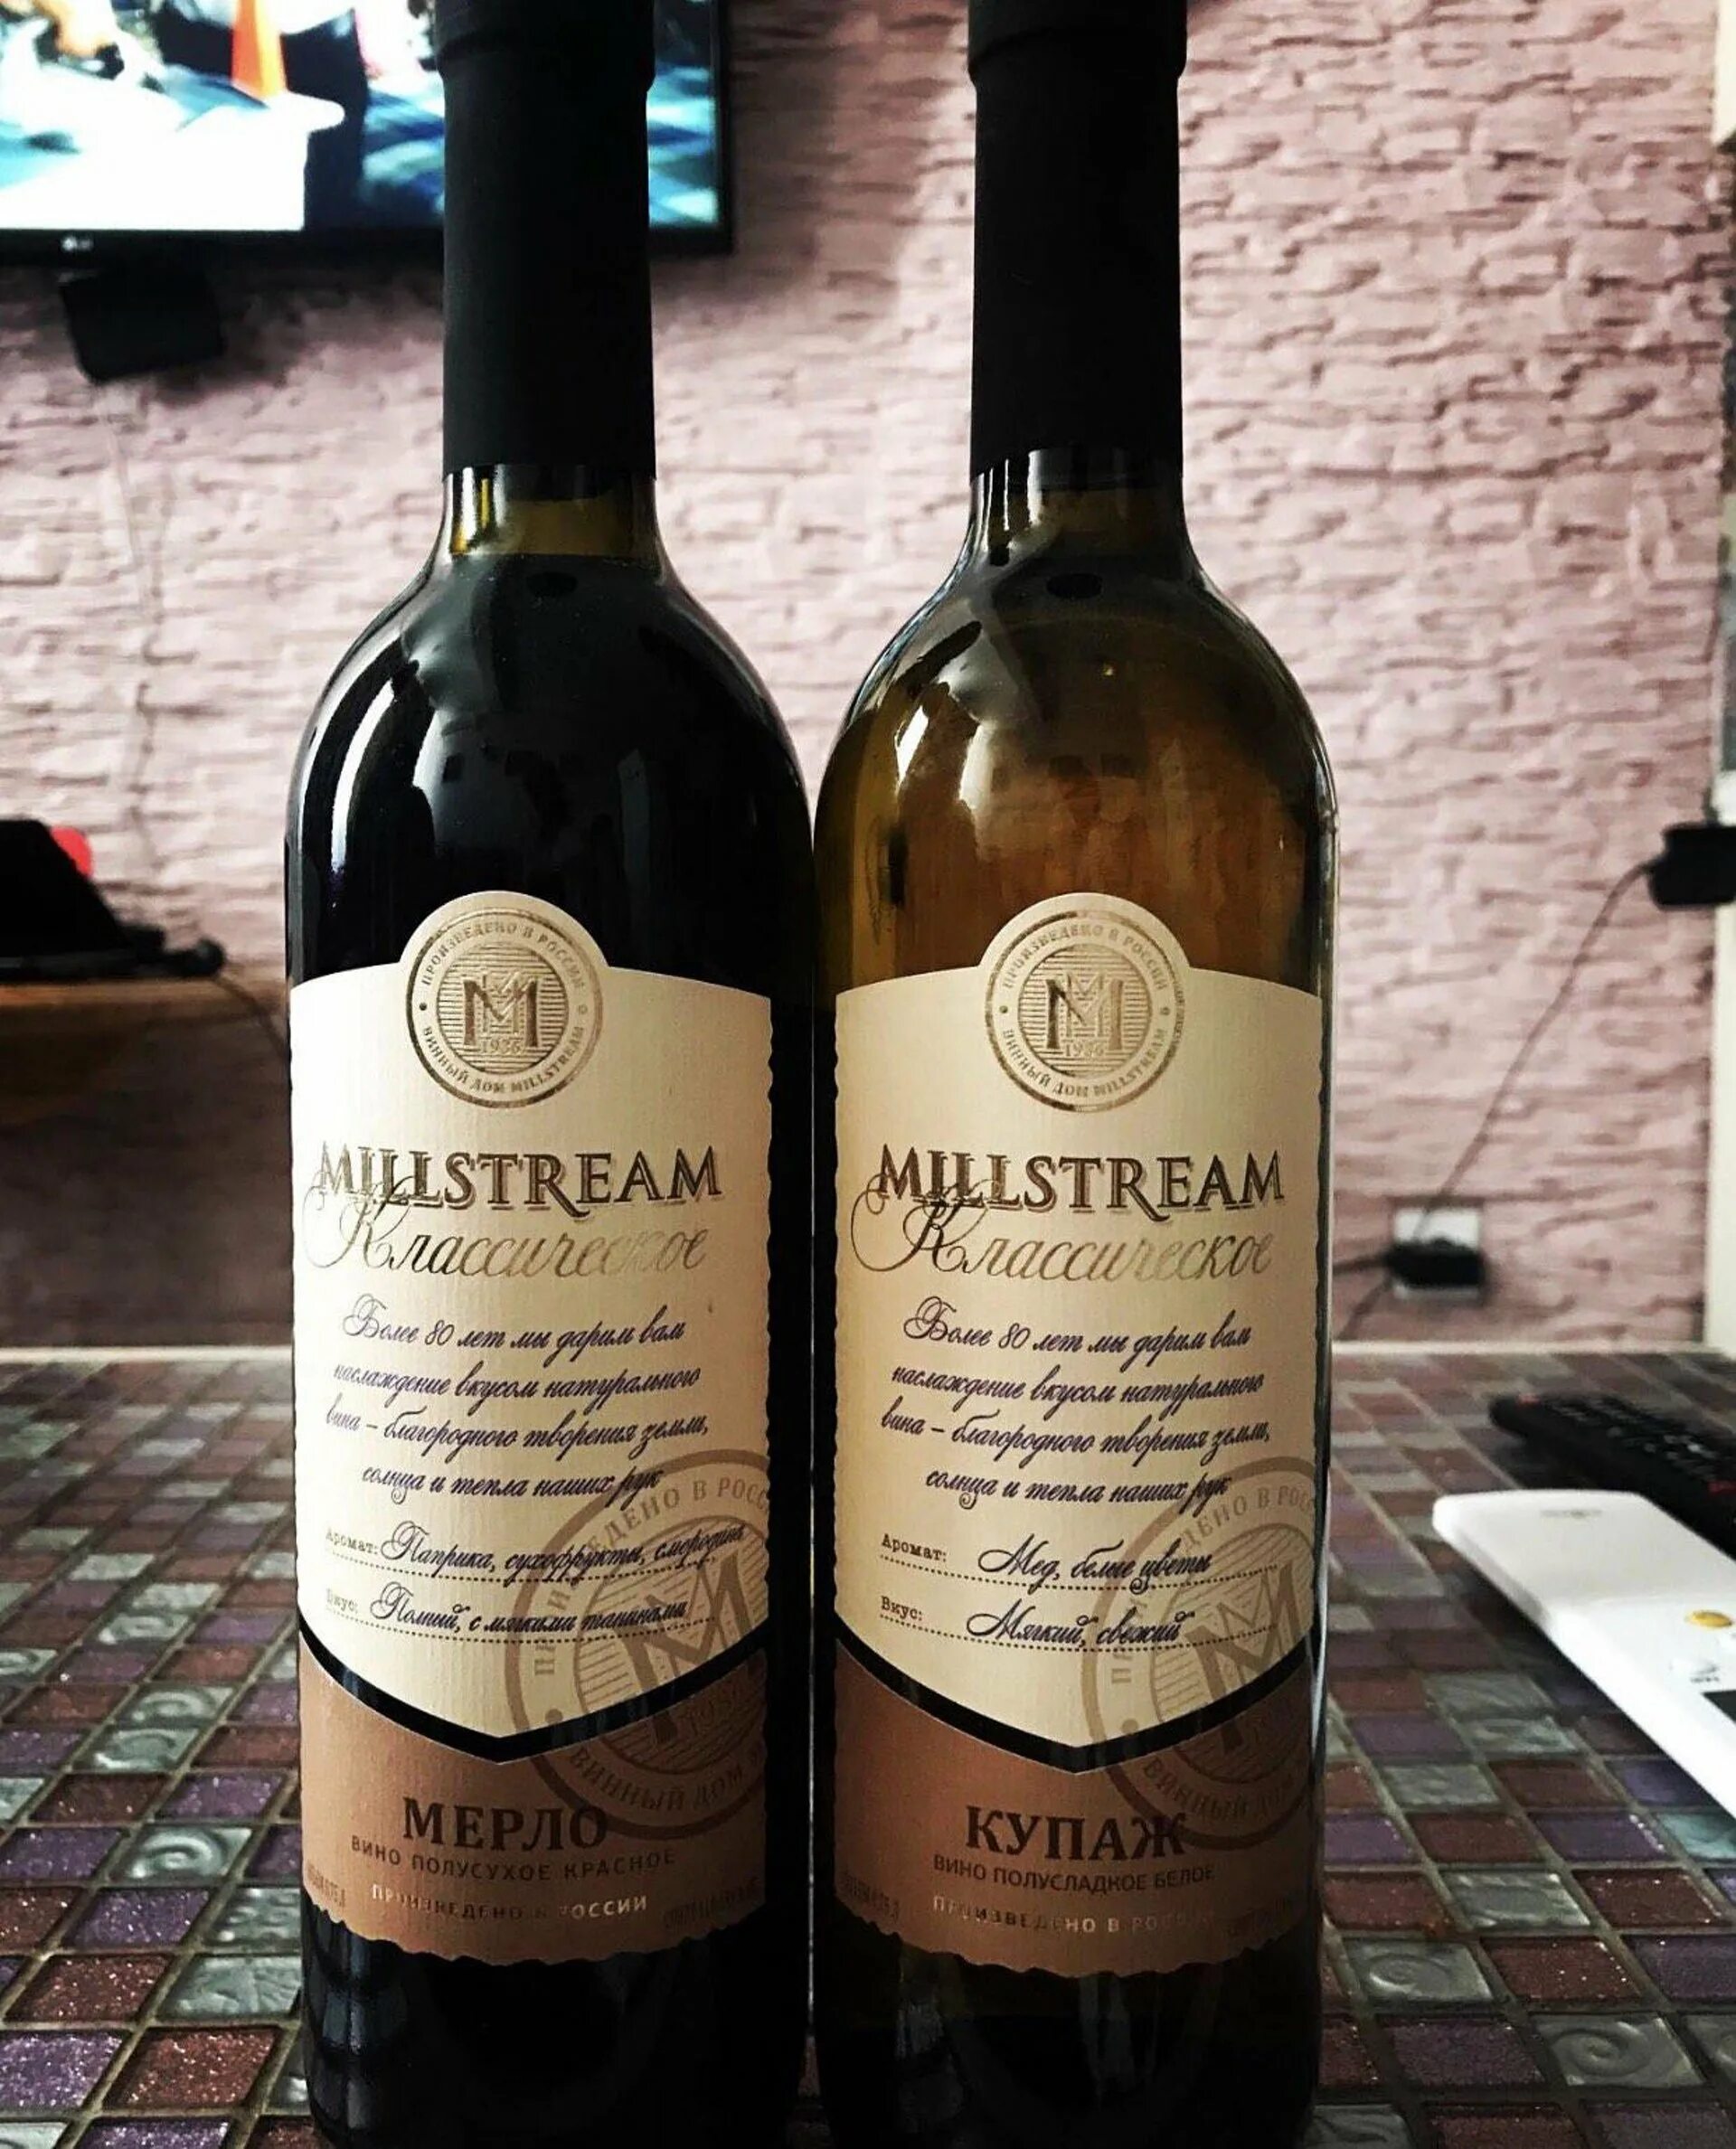 Millstream collection. Мильстрим Черноморские вина. Винный завод Мильстрим. Мильстрим вино. Винзавод Мильстрим.